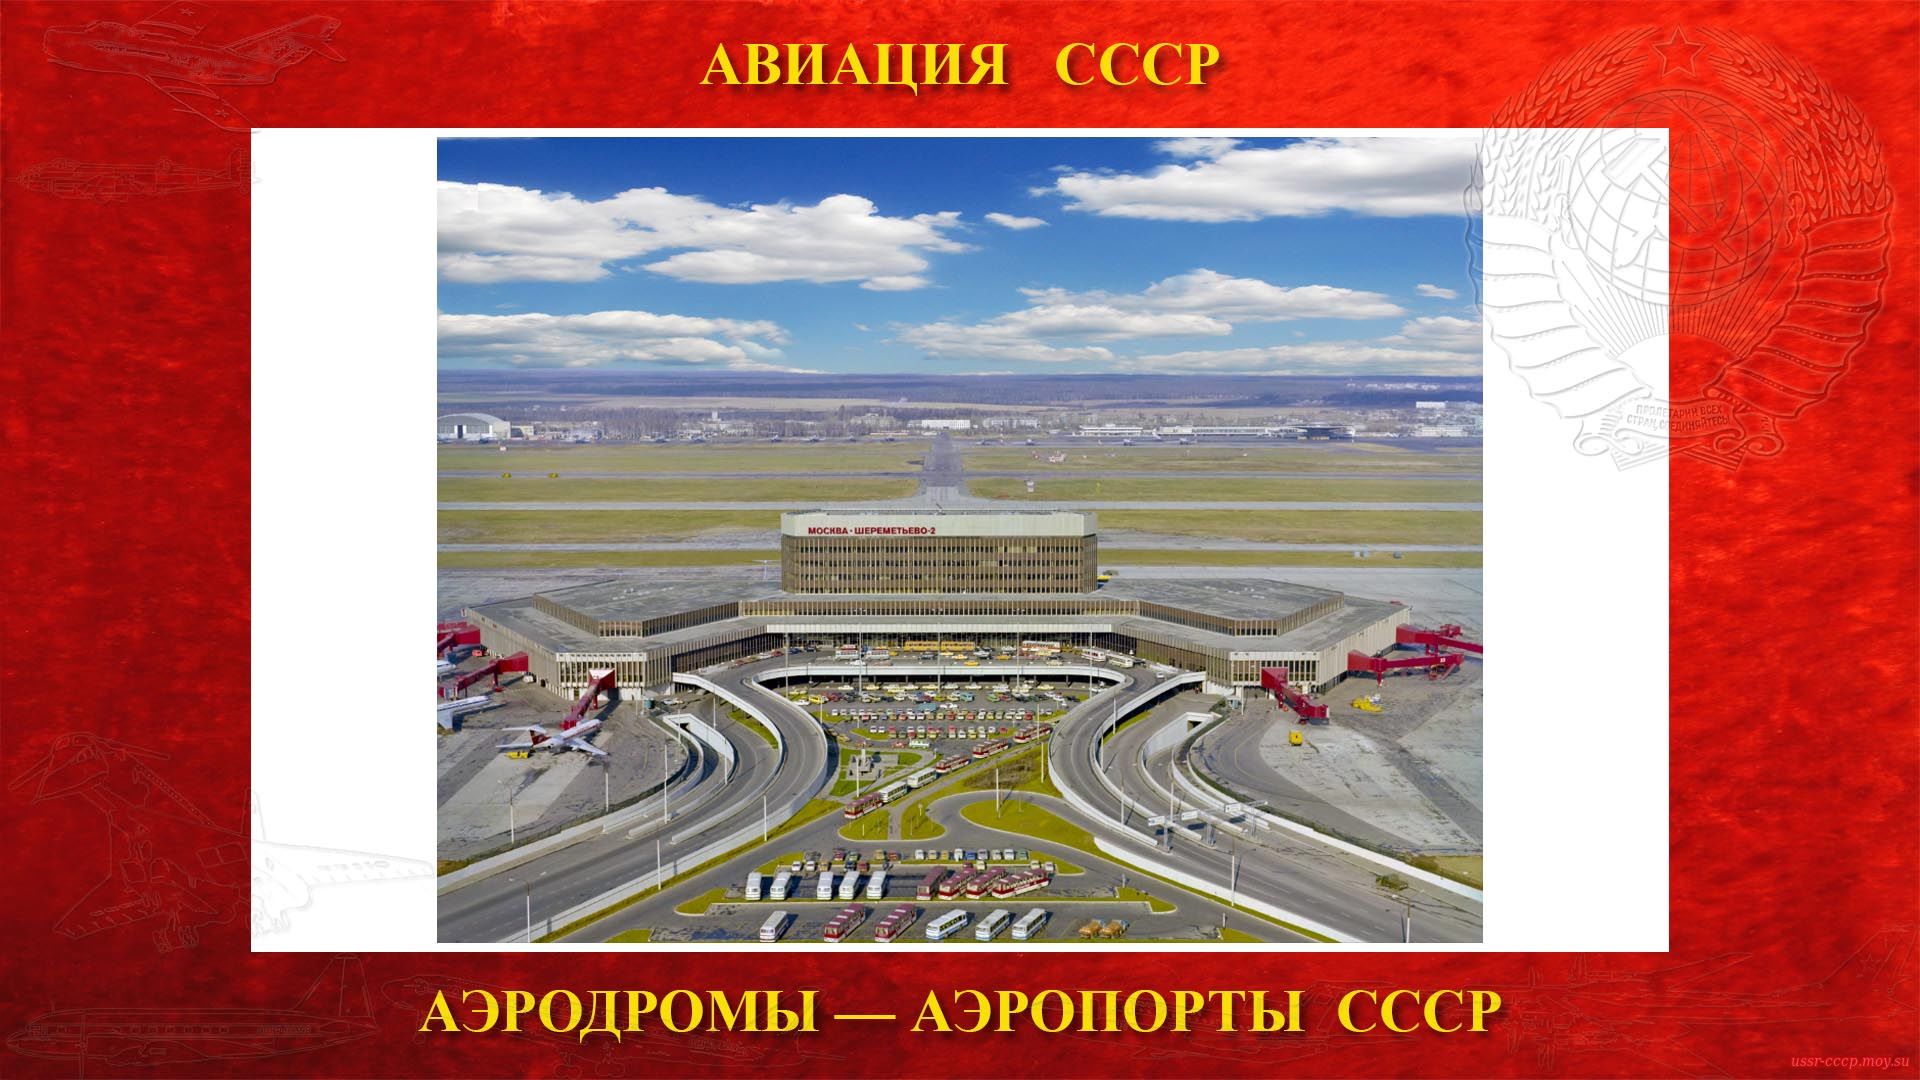 Аэропорт Шереметьево — Международный аэропорт города Москвы, столицы СССР (11.08.1959)